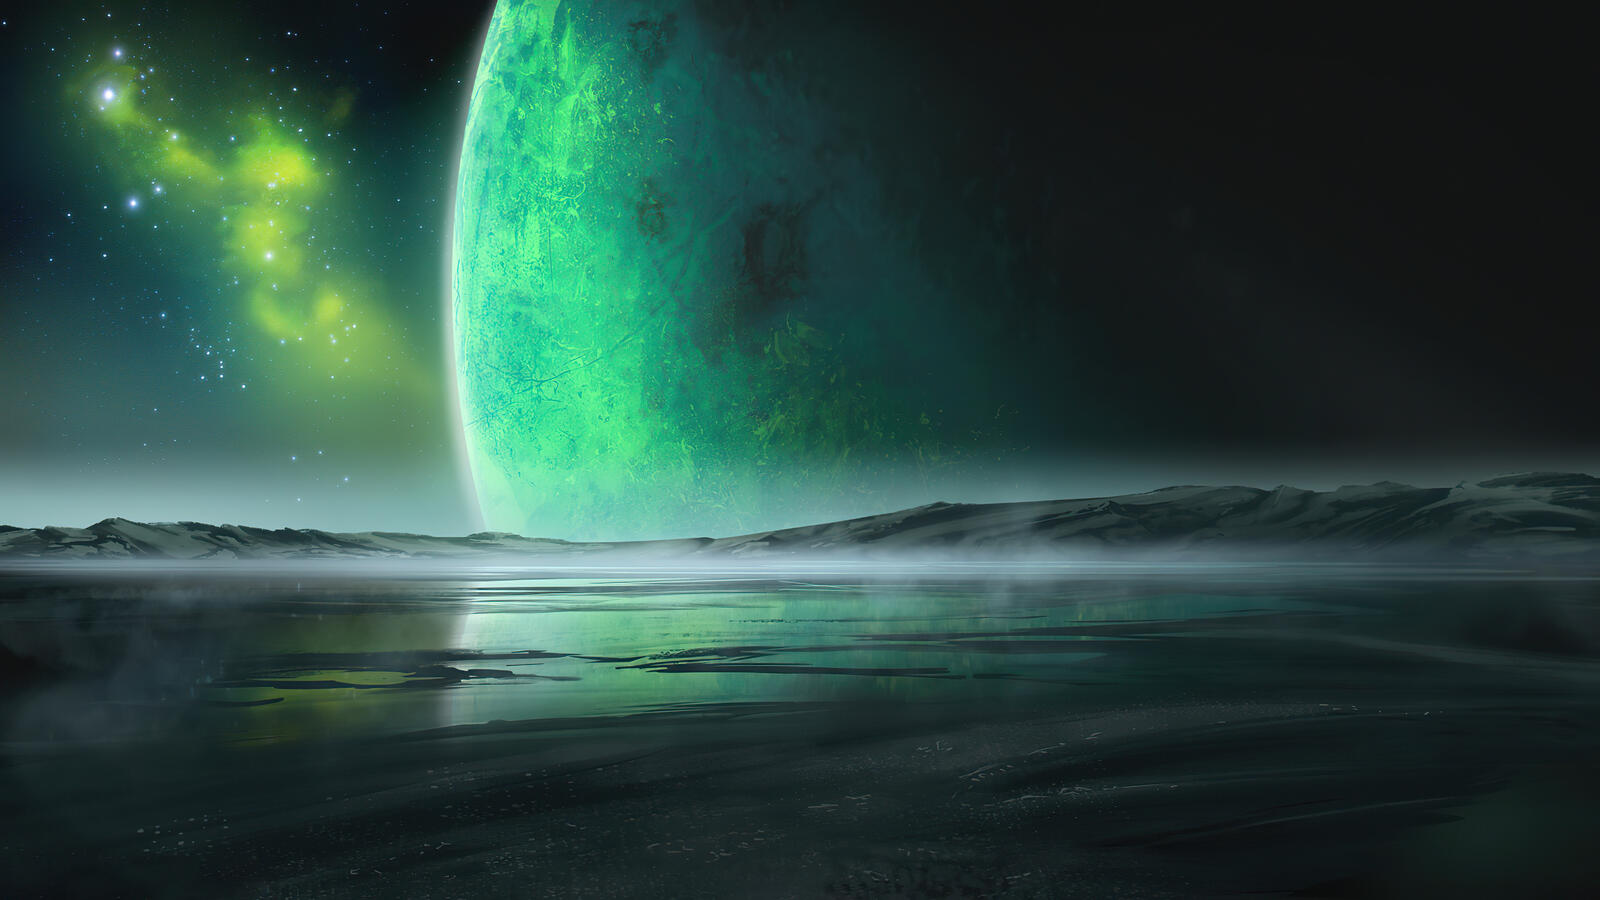 Бесплатное фото Фантастический планетарный пейзаж с проходящей вблизи планетов